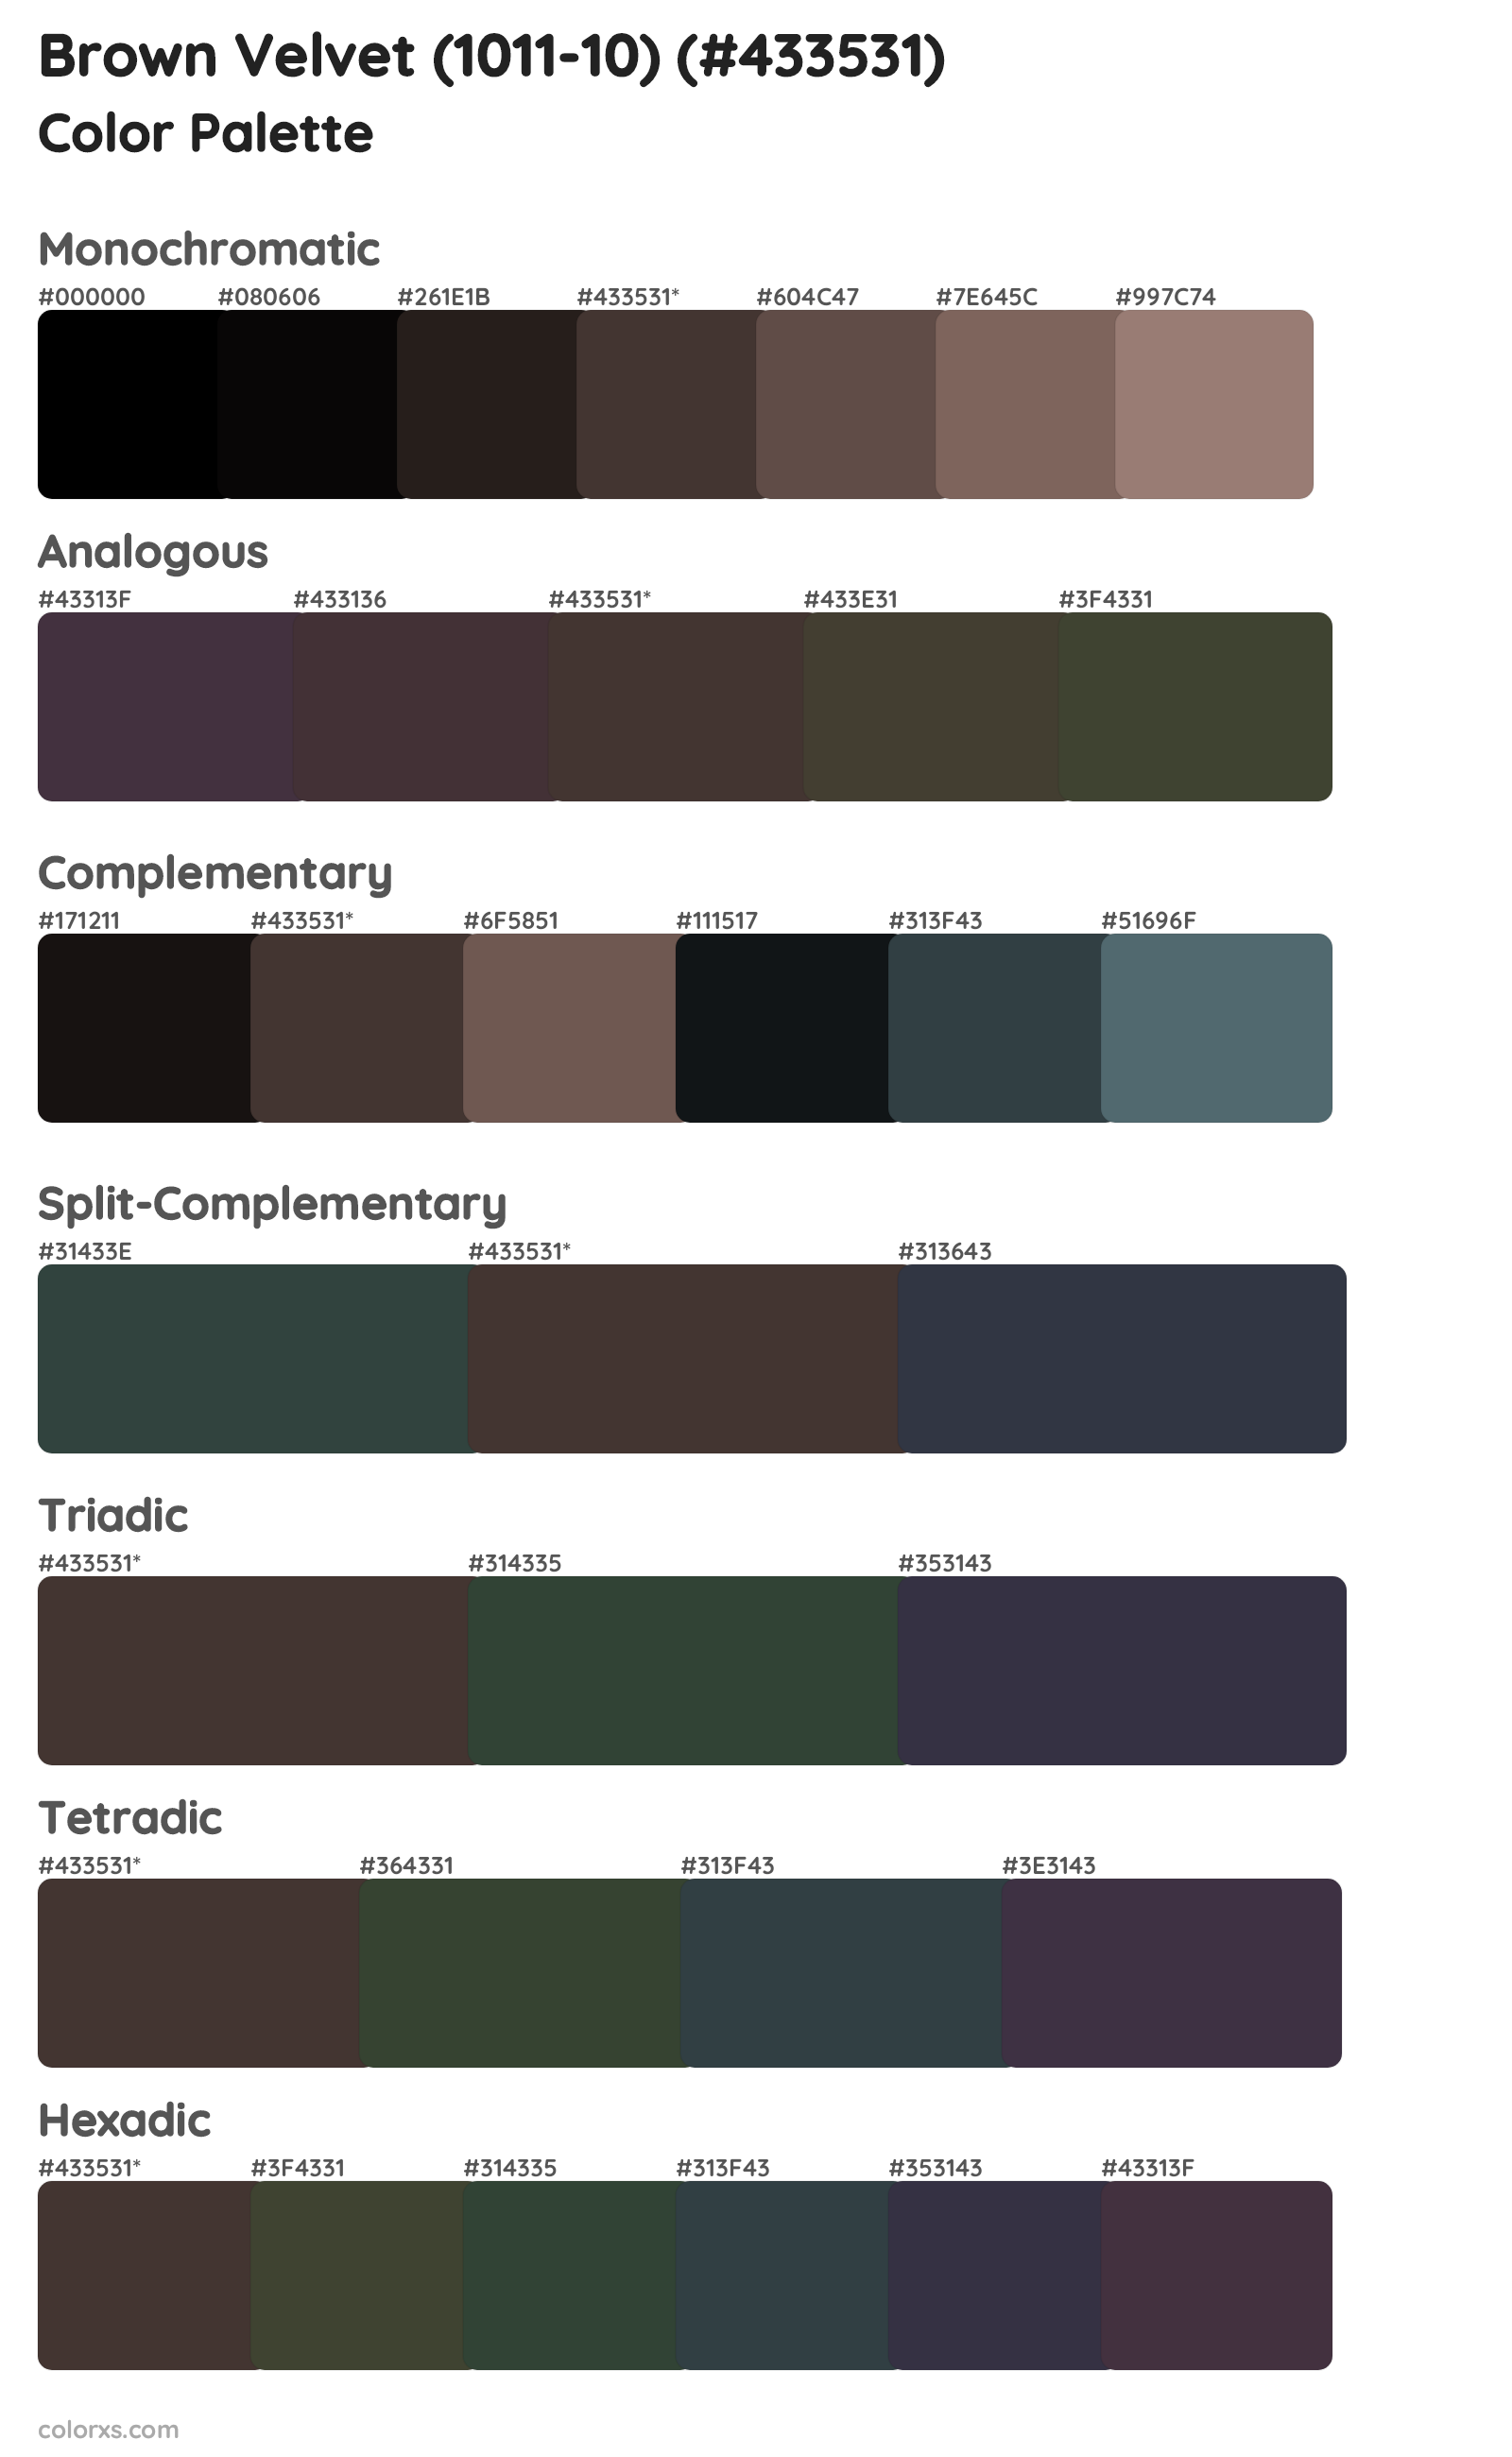 Brown Velvet (1011-10) Color Scheme Palettes